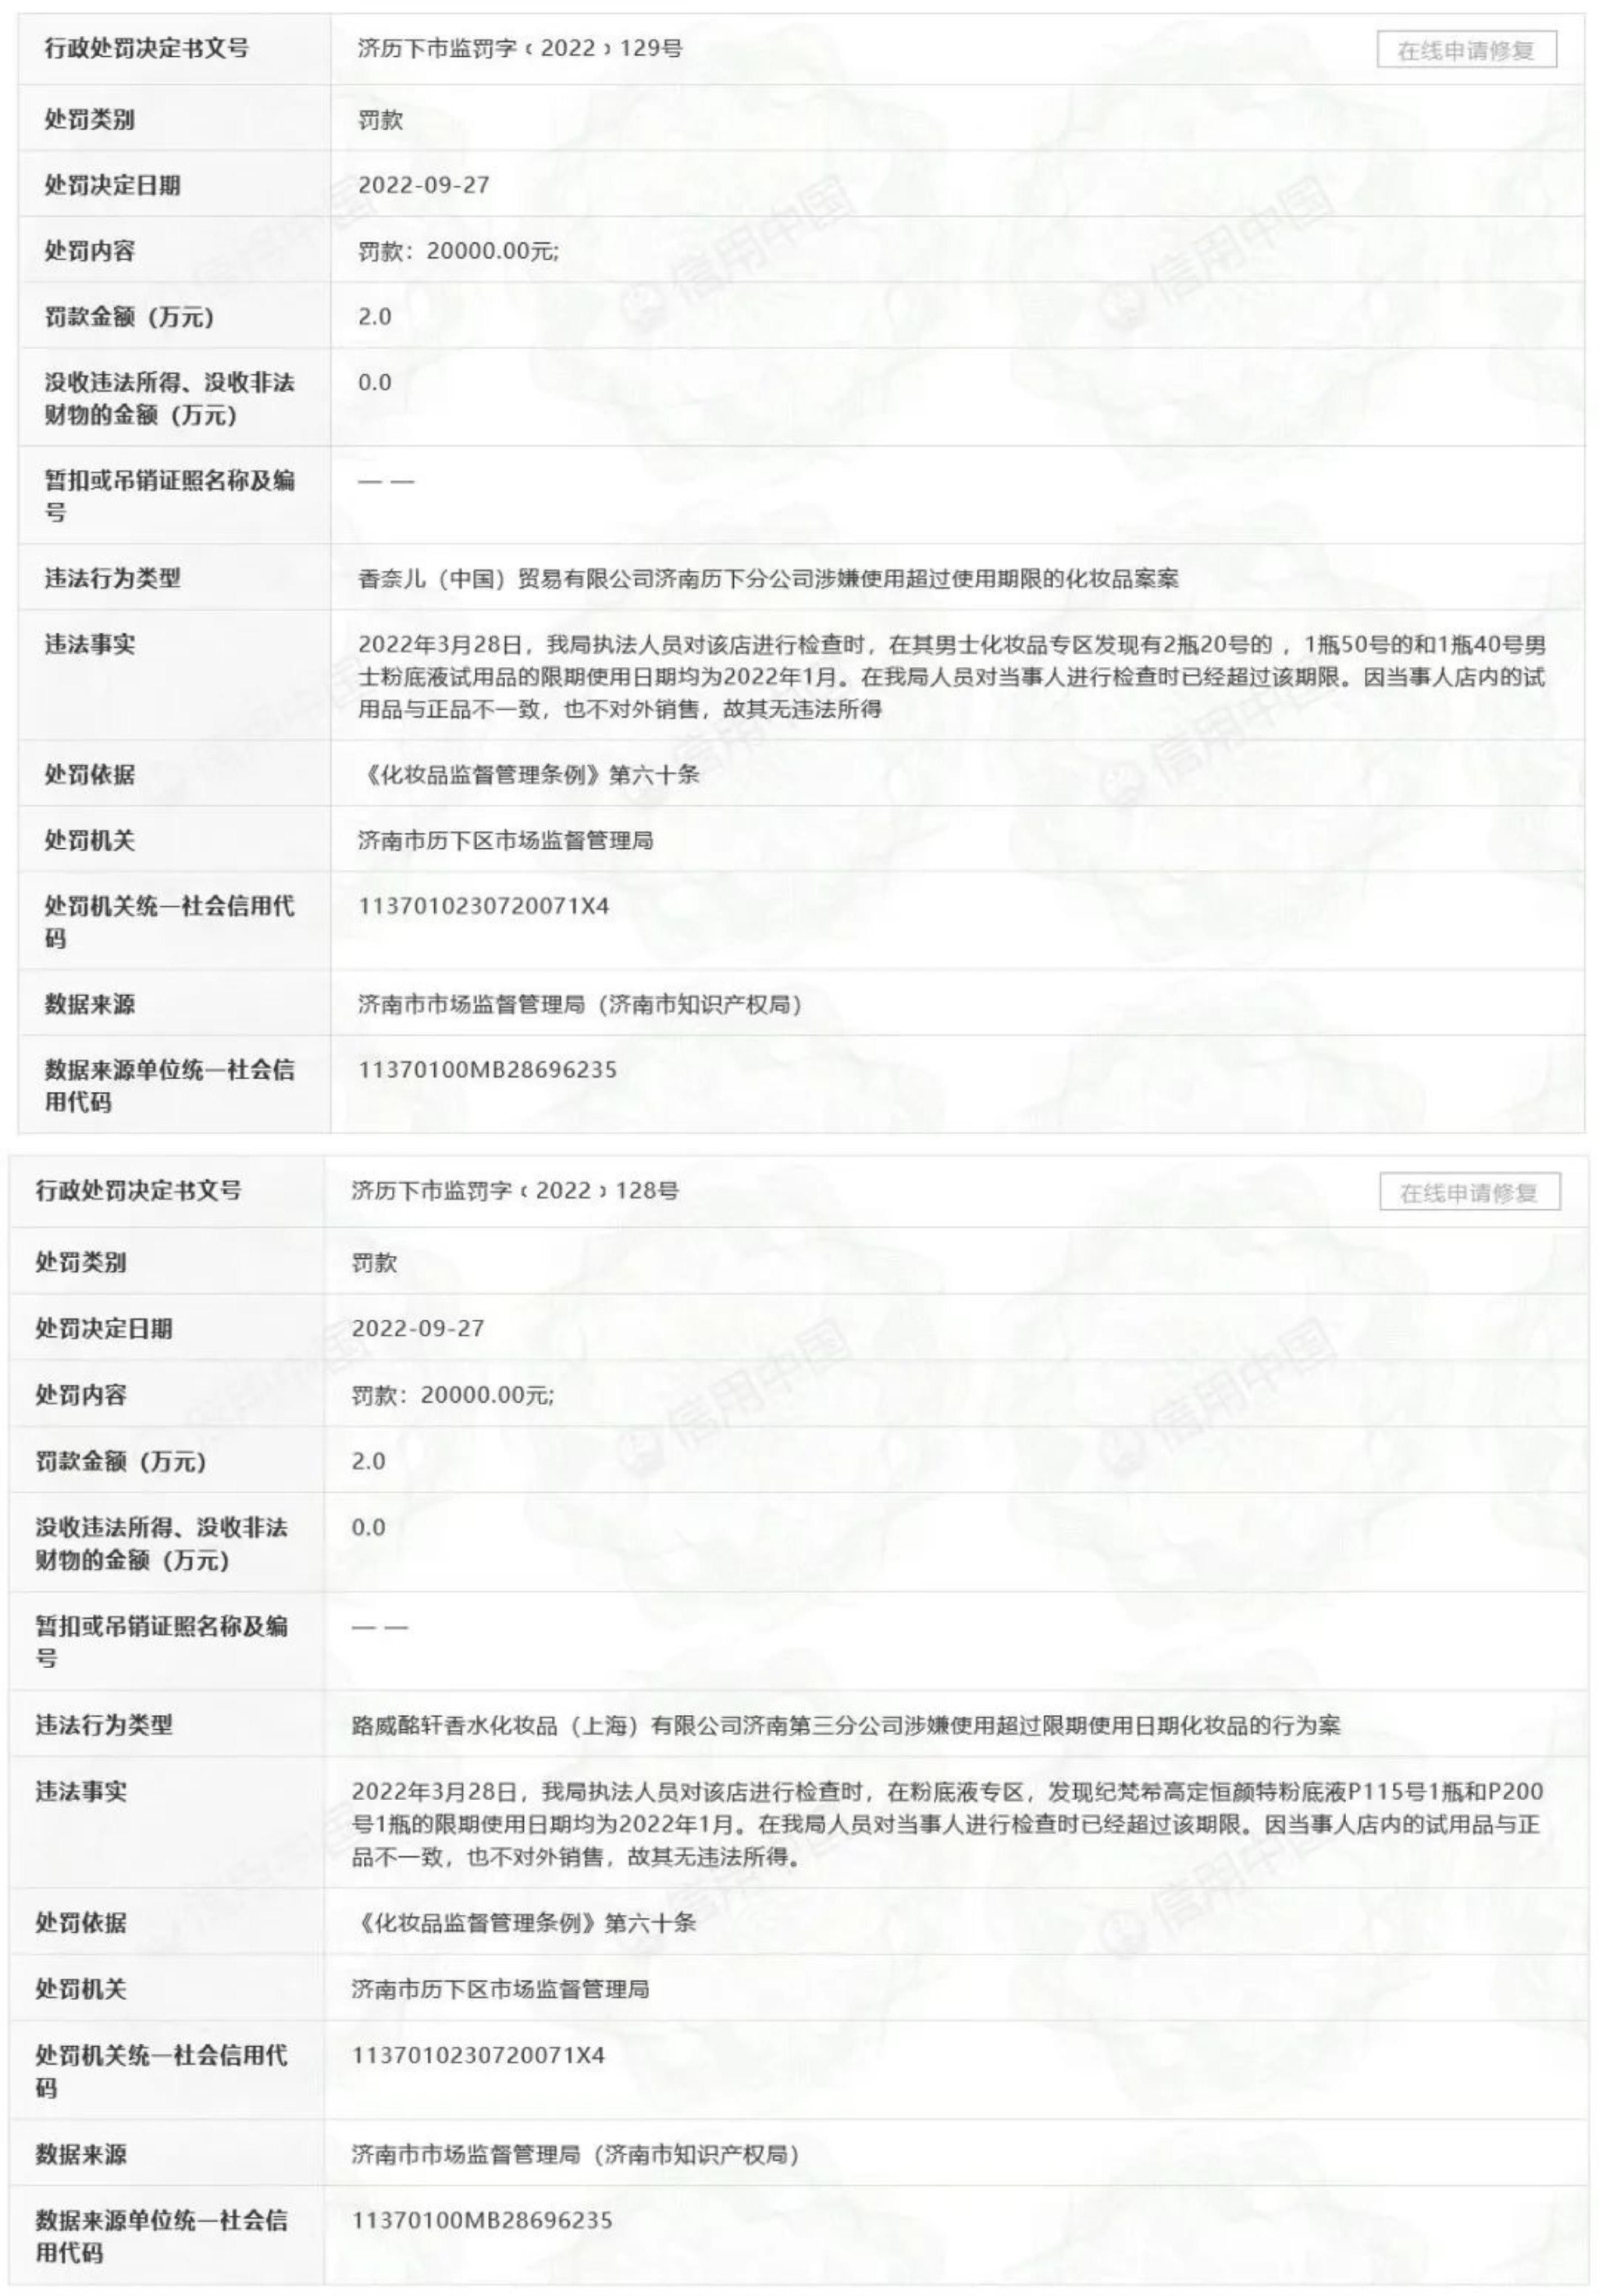 图/信用中国官网截图